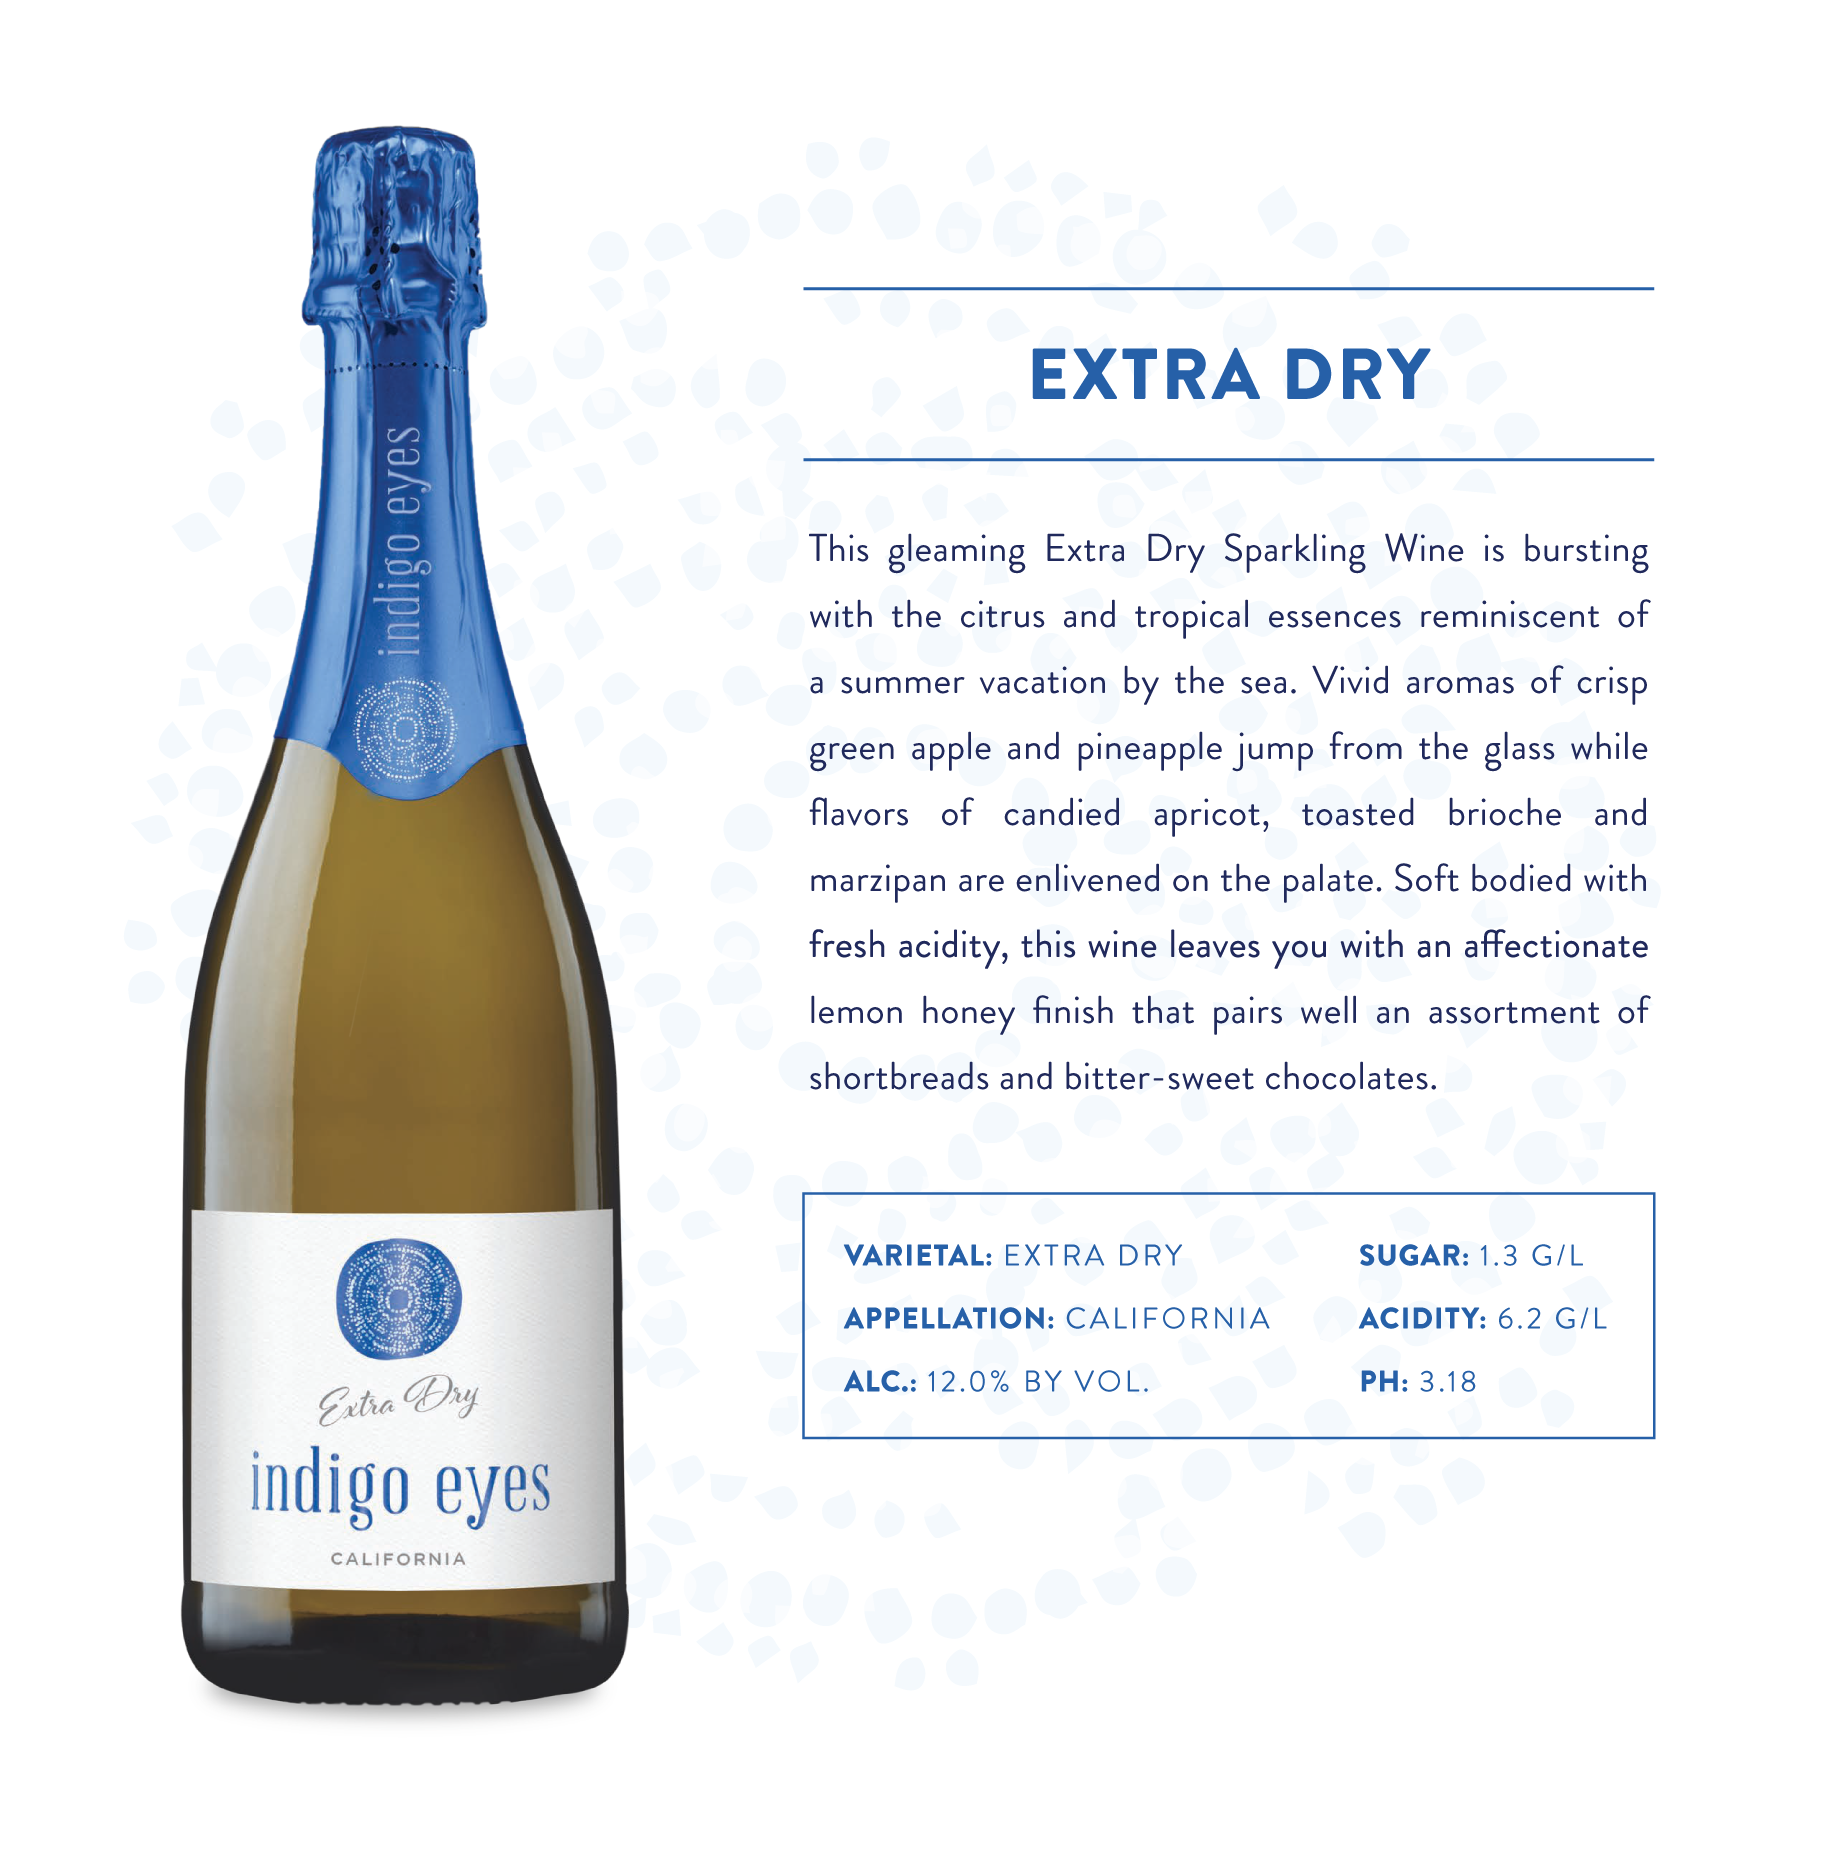 Indigo Eyes Extra Dry Sparkling Wine Product Page